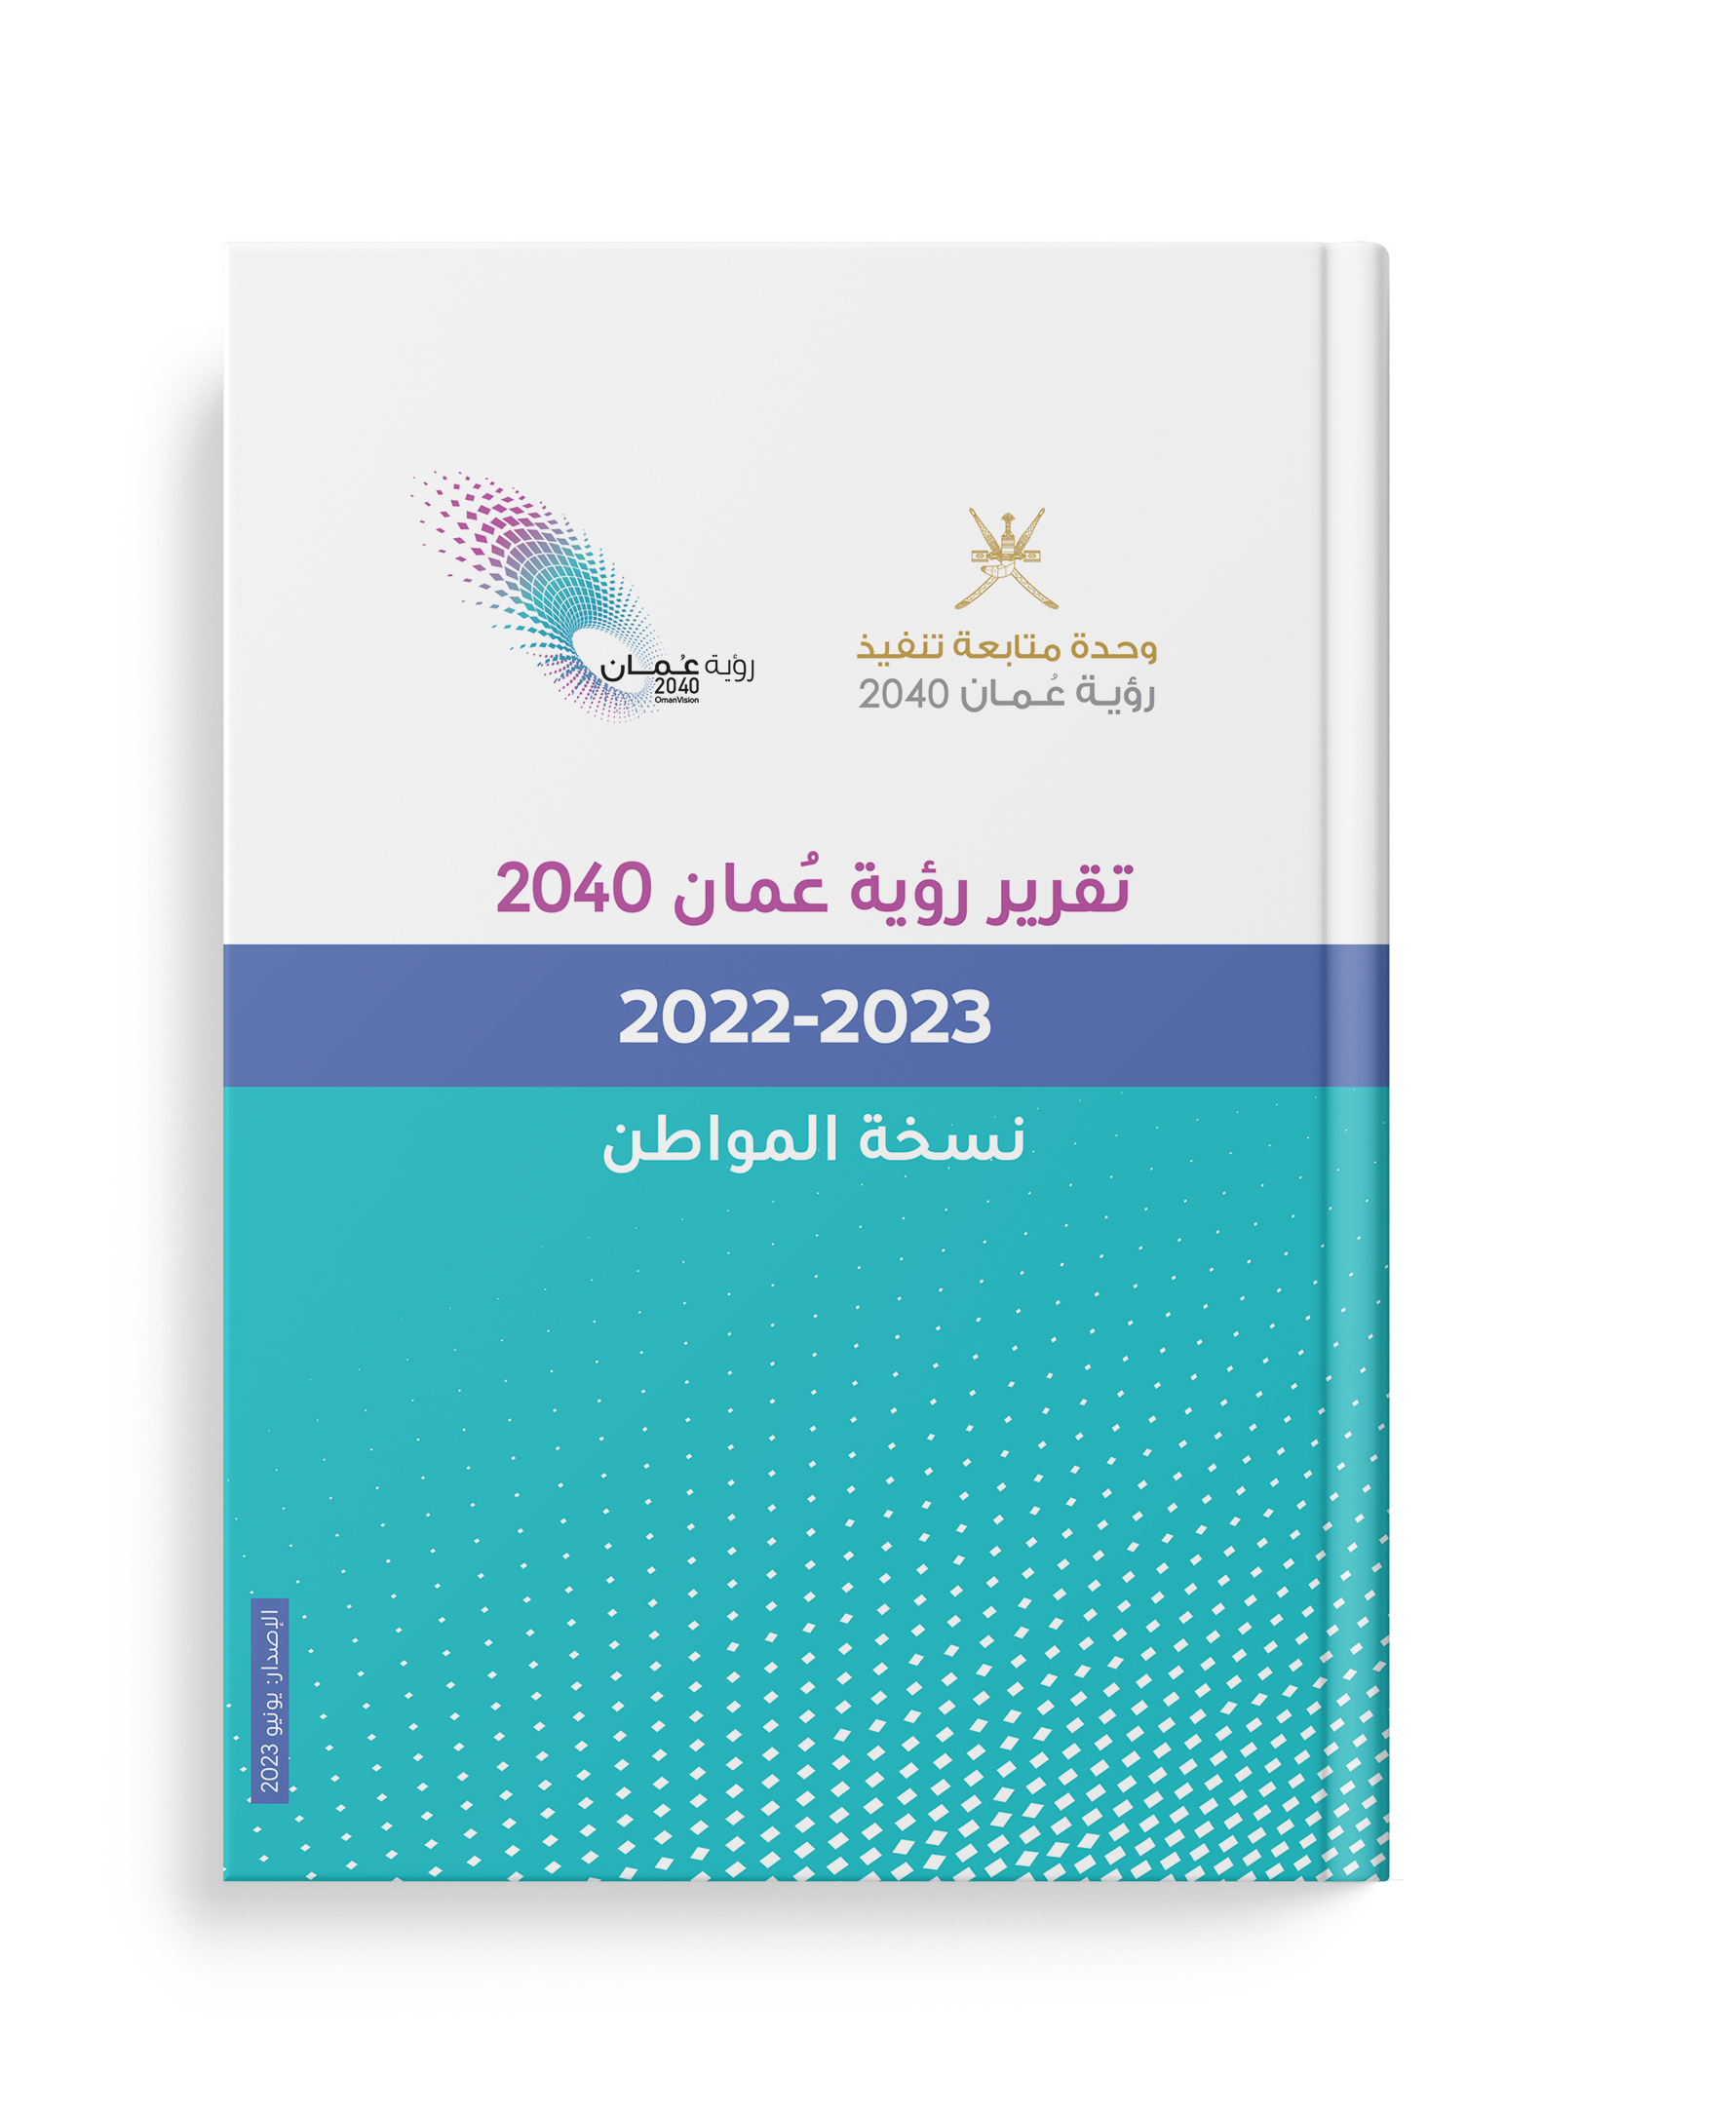  تقرير رؤية عمان 2040 